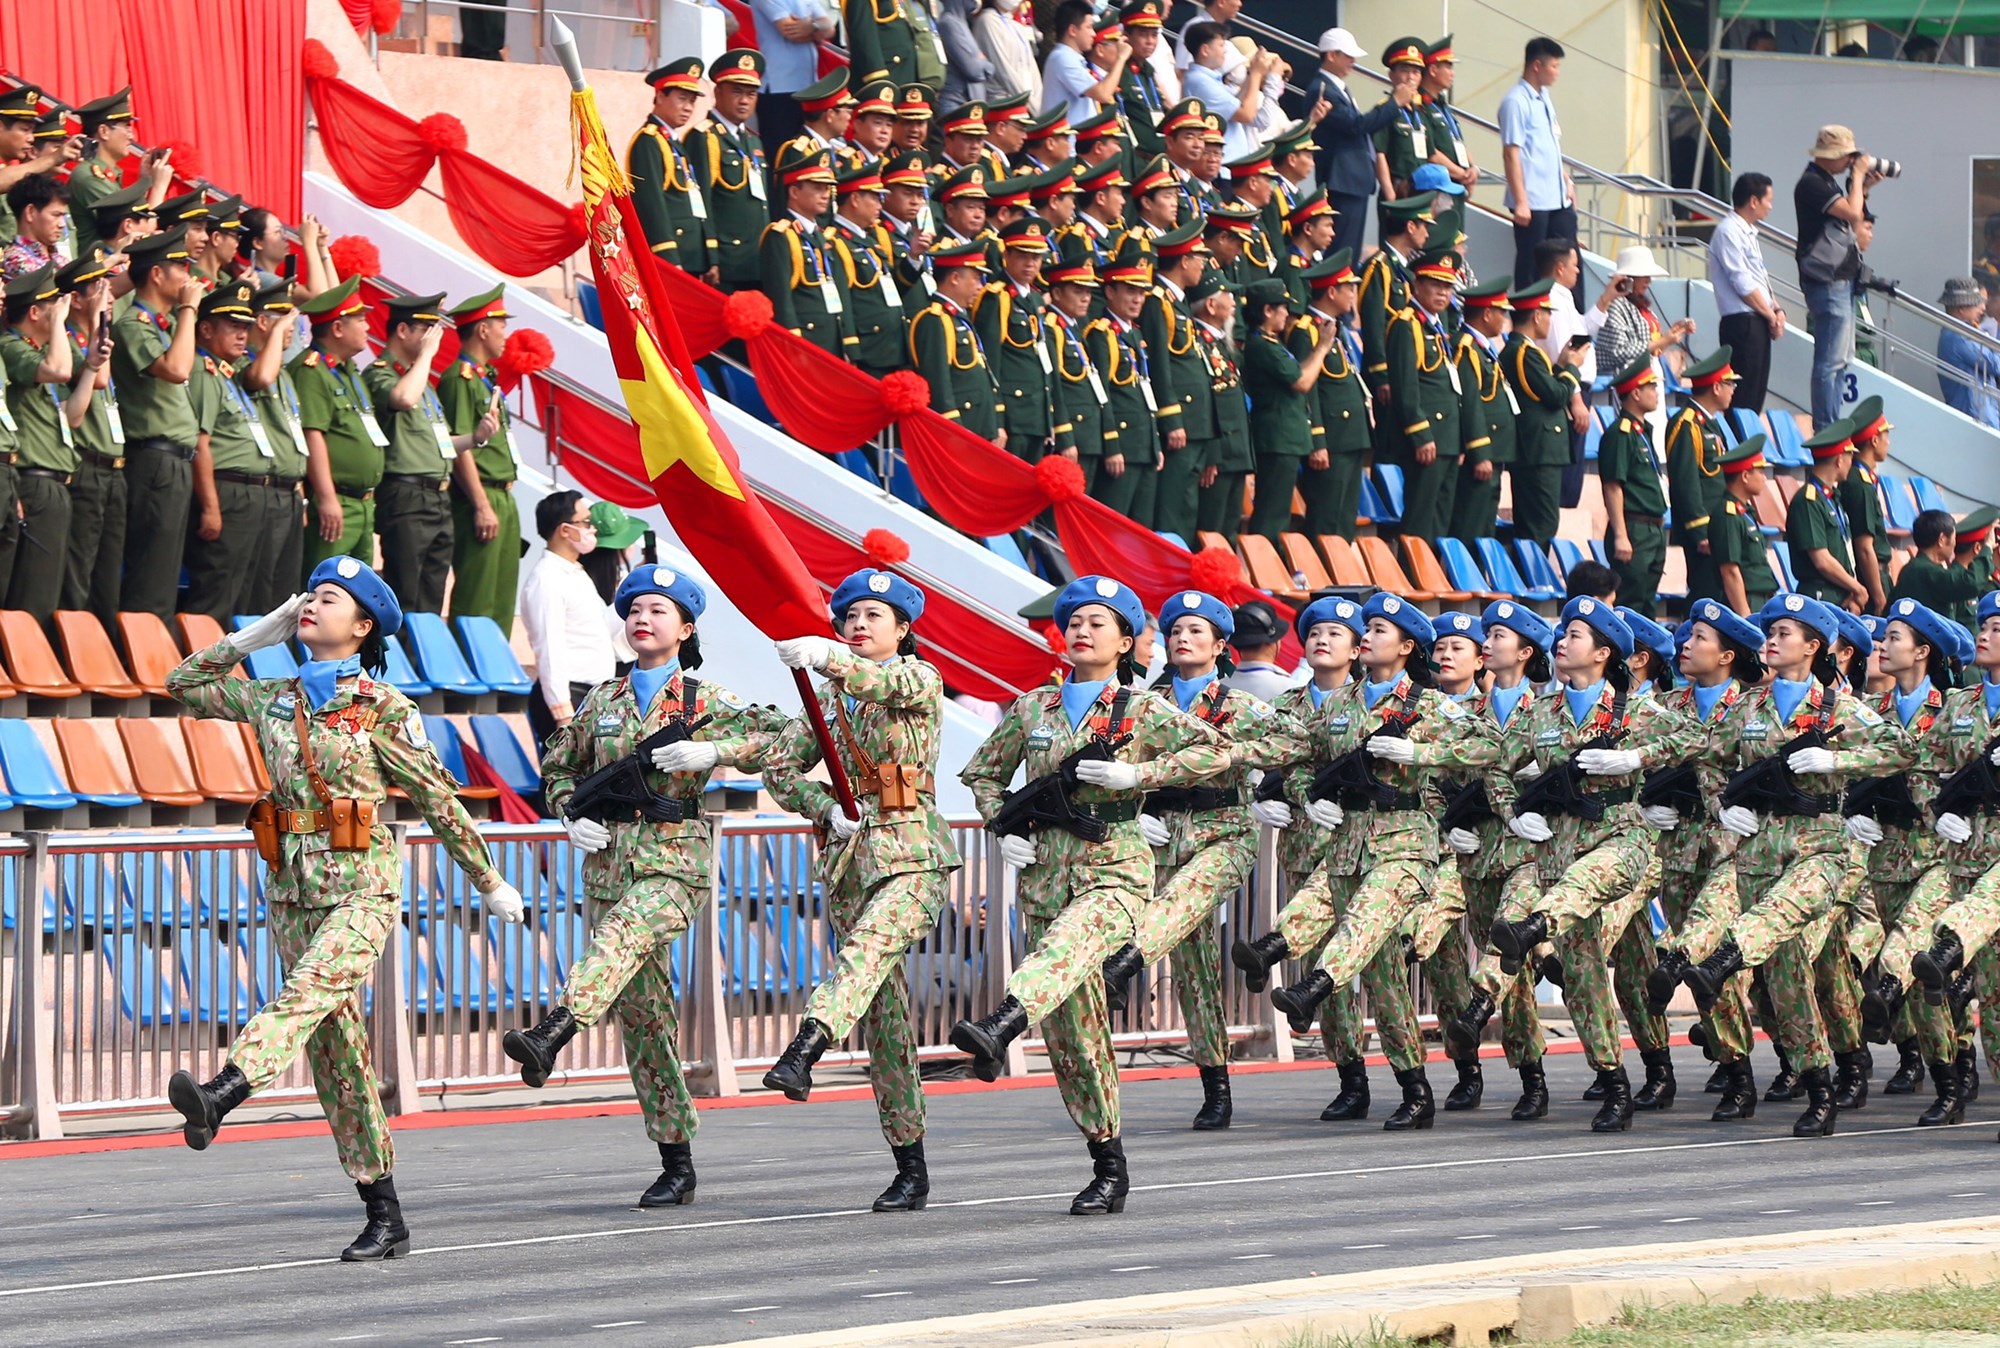 Tổng duyệt diễu binh, diễu hành kỷ niệm 70 năm Chiến thắng Điện Biên Phủ - ảnh 15